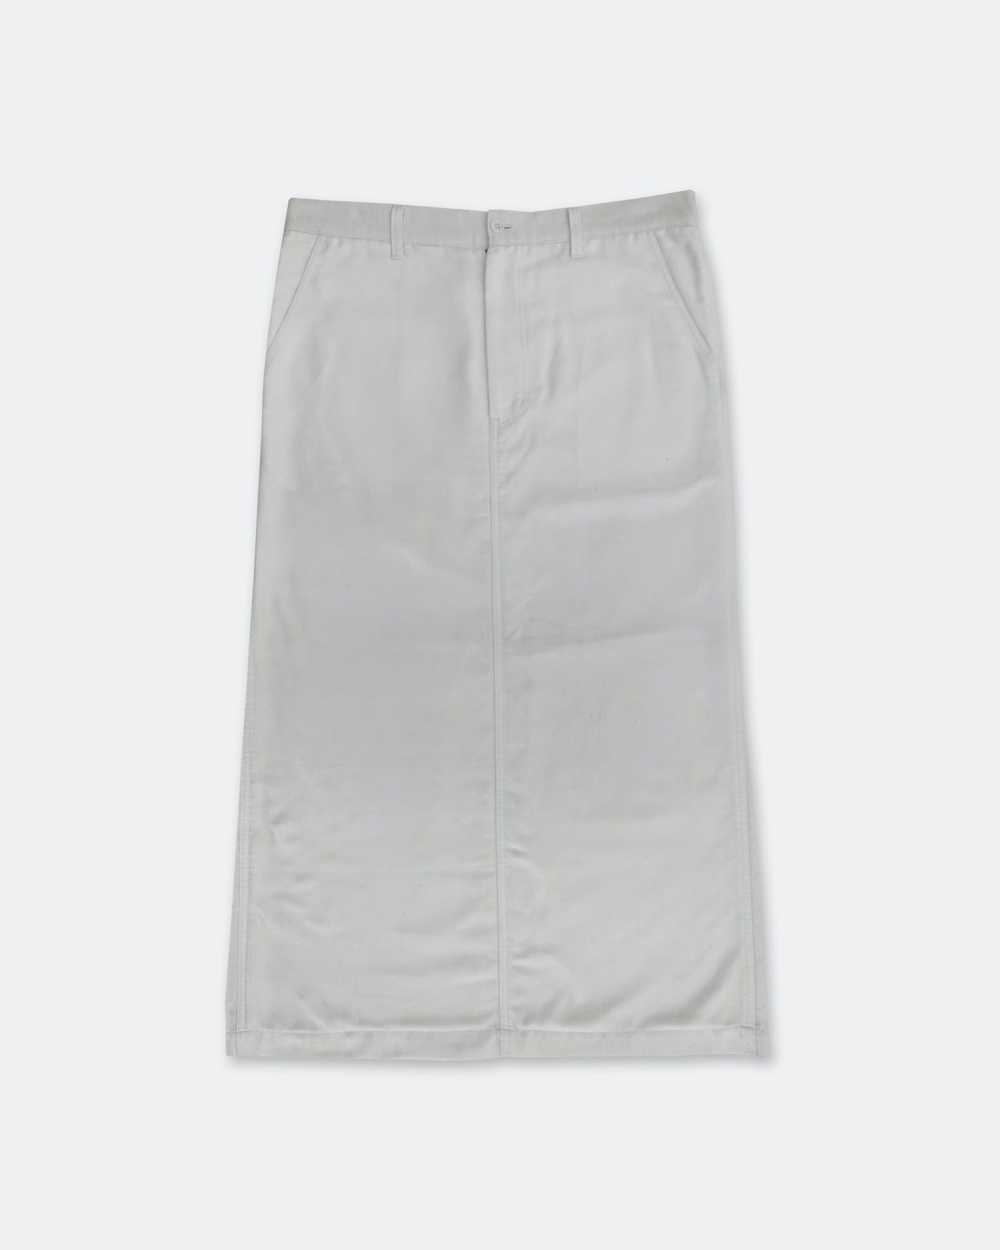 Comme des Garcons tricot 1997 Cotton Skirt - image 1